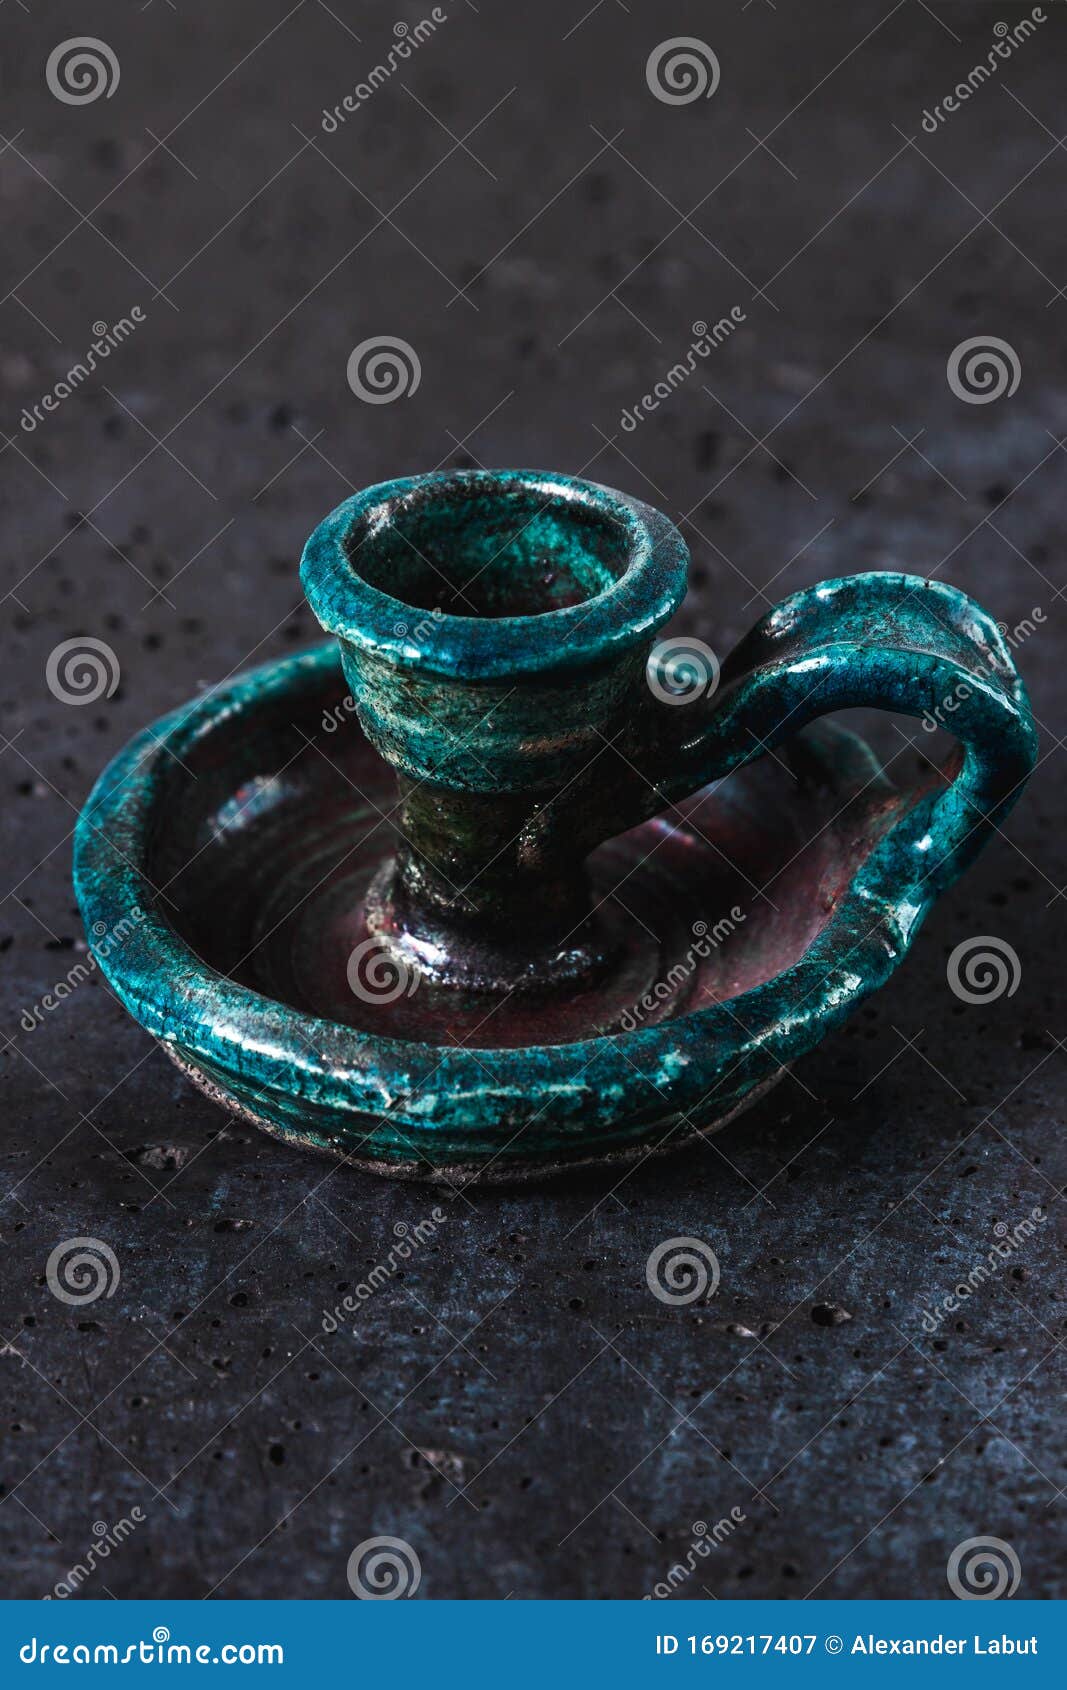 Candelabro de cerámica antigua de color turquesa sobre fondo de cemento gris, objeto antiguo diseñado para velas que representan una exquisita decoración casera, foto vertical